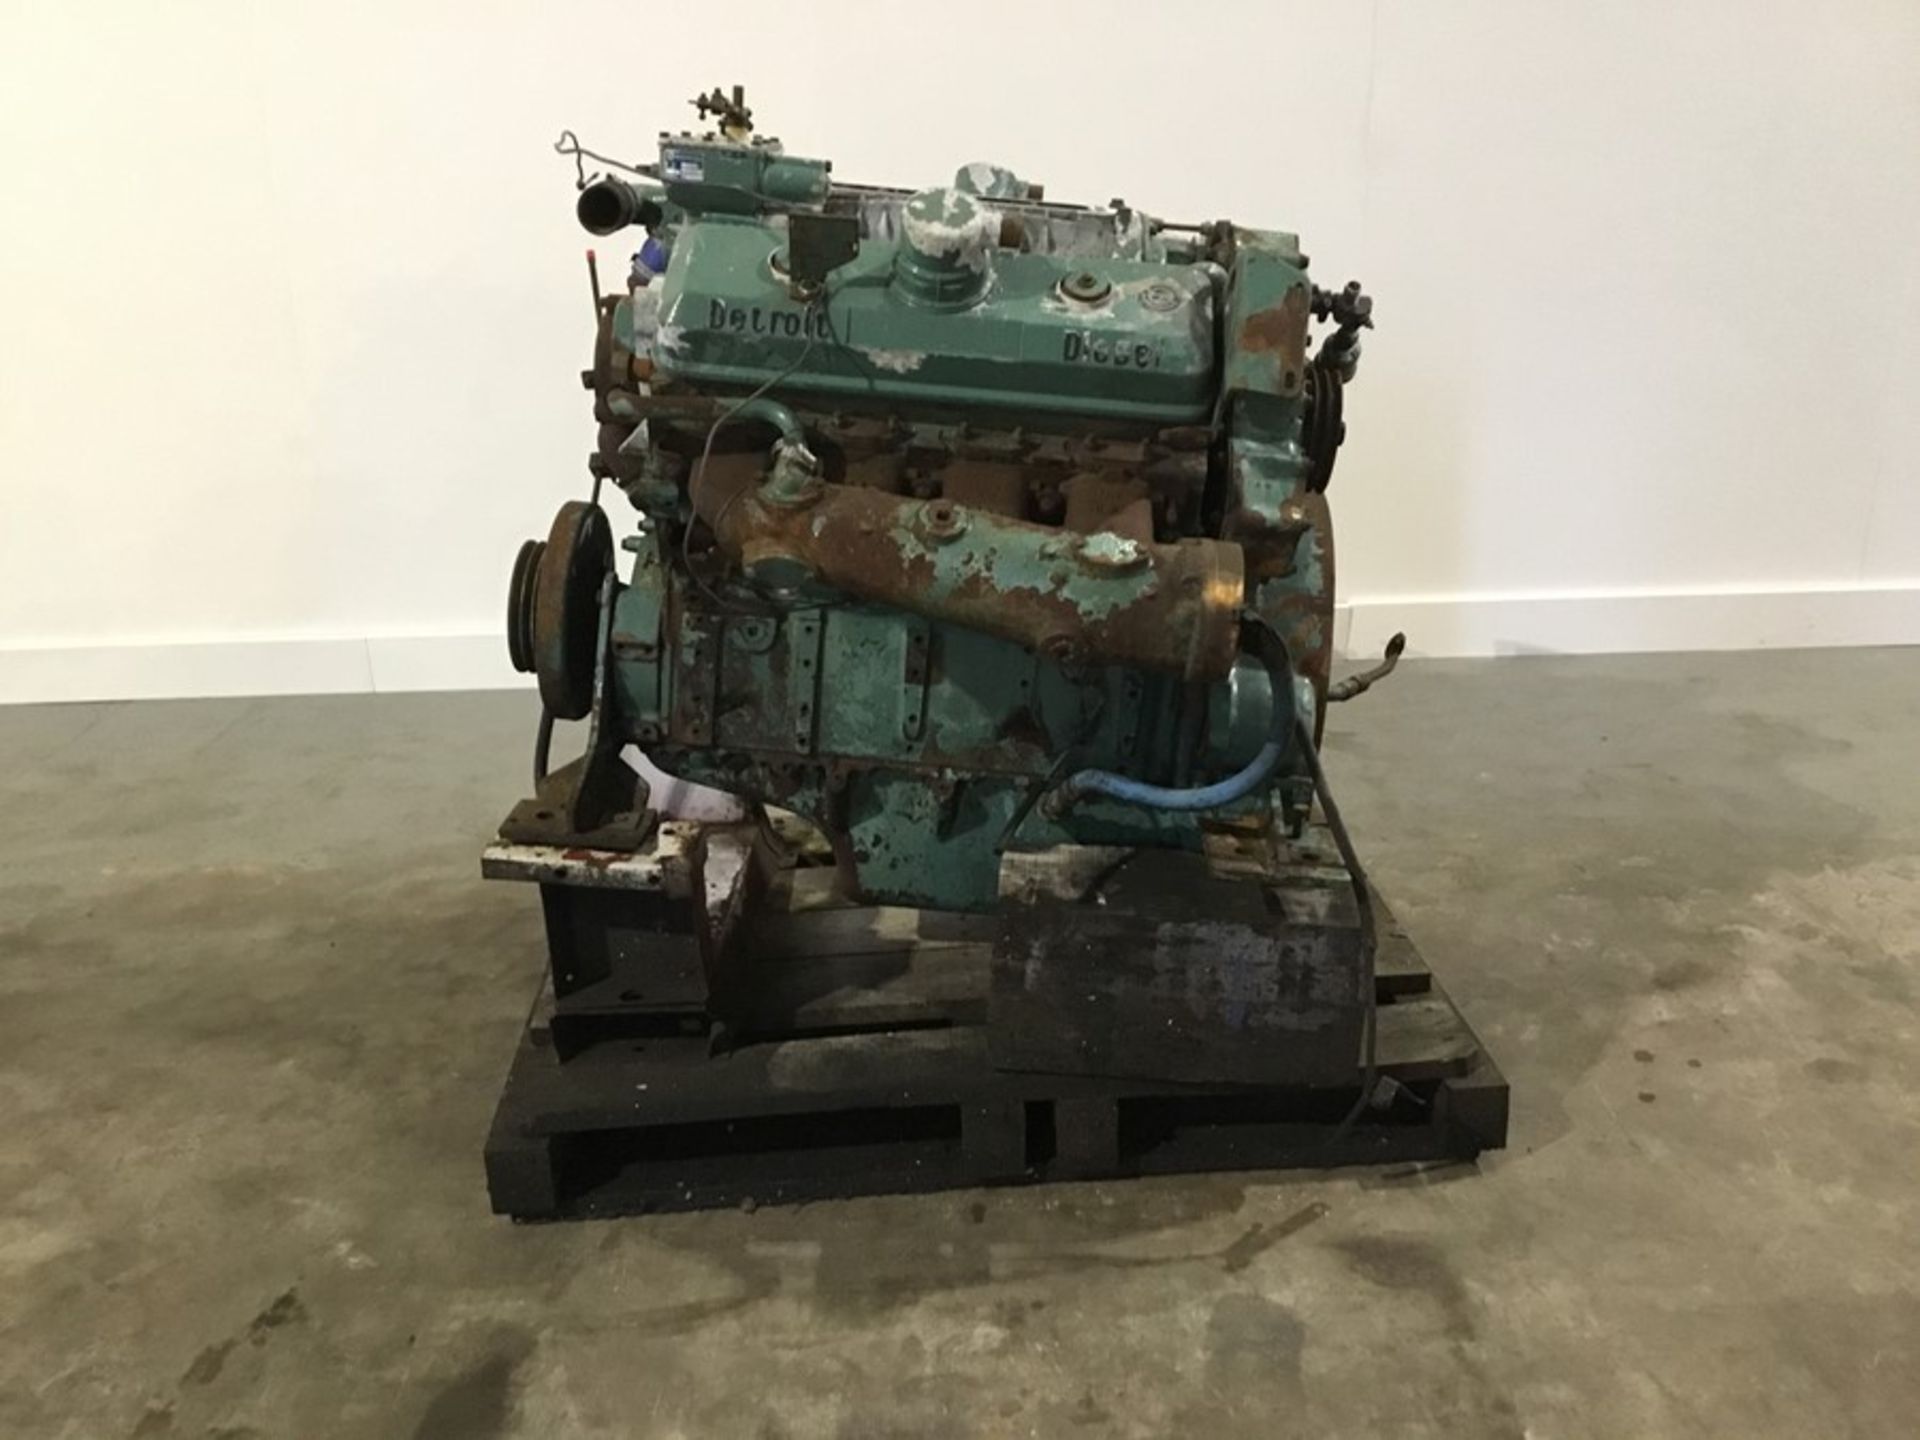 Detroit 8V71 Diesel Engine: Detroit 8v71 v8 Non Turbo Serial Number: 8FW000229*8082-3301 used - Image 18 of 18